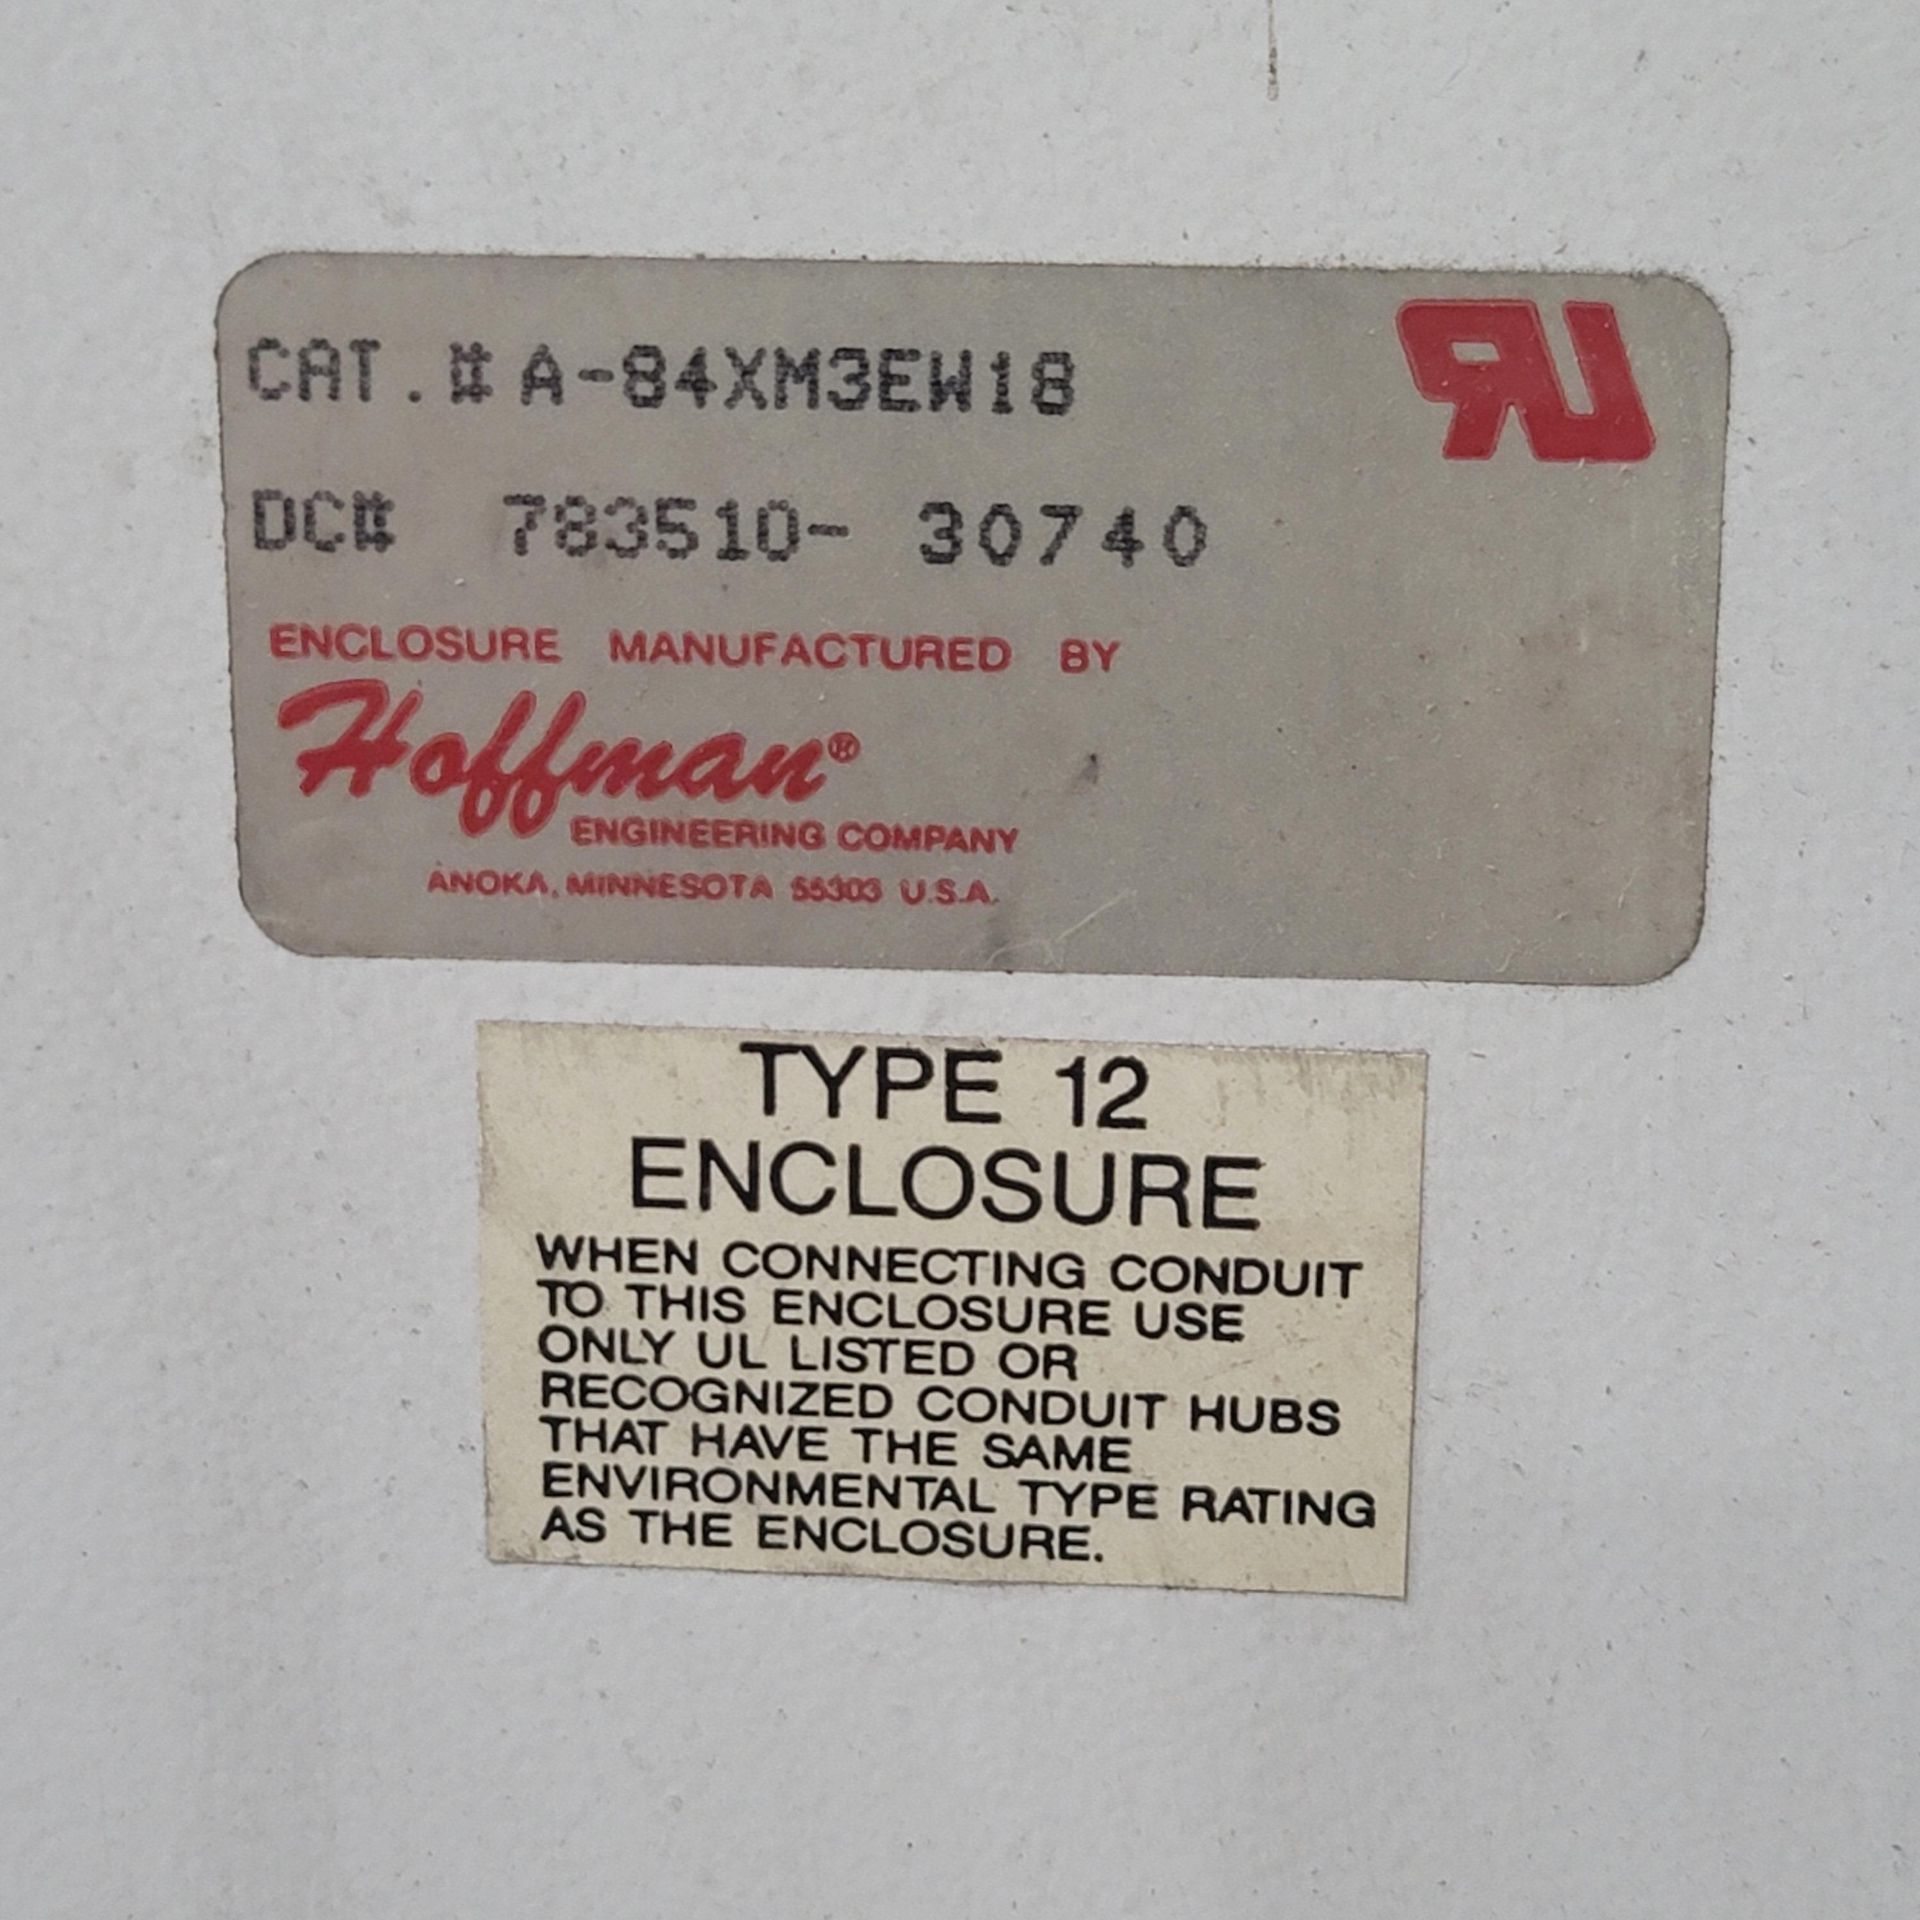 HOFFMAN ELECTRICAL ENCLOSURE, 3-DOOR ENCLOSURE, 9'-10"W X 18"D X 8'HT, CAT. NO. A-84XM3EW18, DC - Image 5 of 5